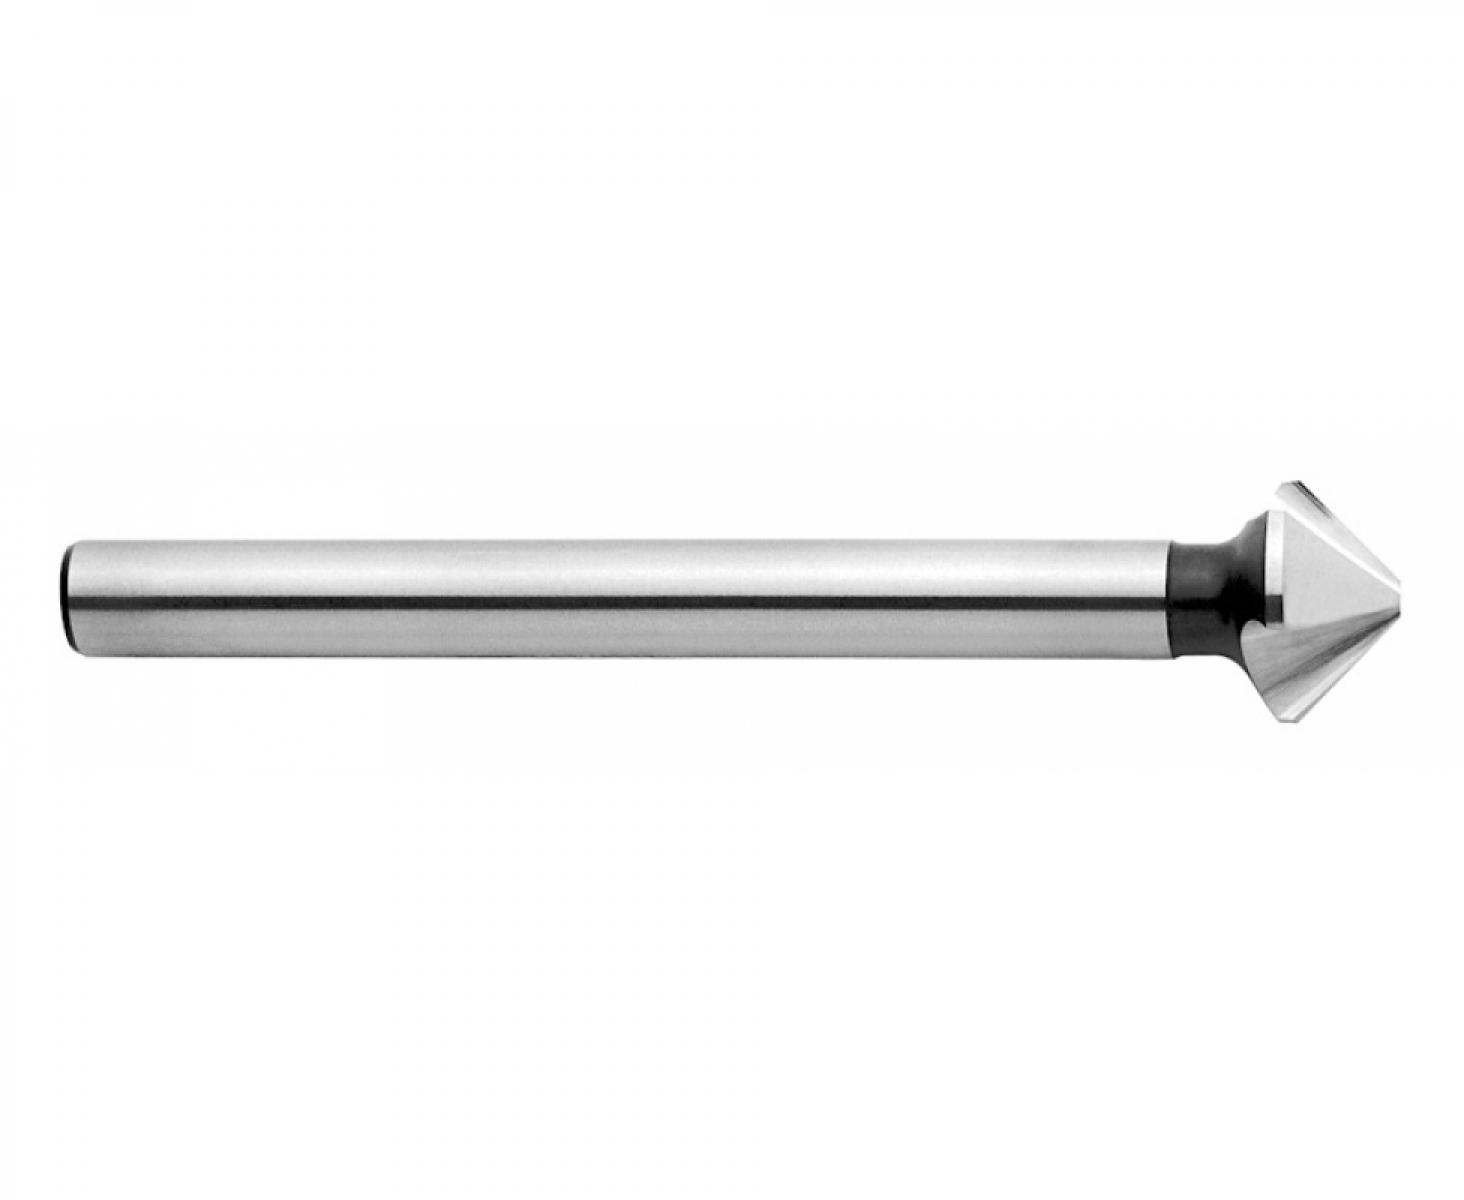 Зенкер конический 90° 10,4 мм DIN 335 C Exact GQ-50703 3 режущих кромки цилиндрический хвостовик длинный